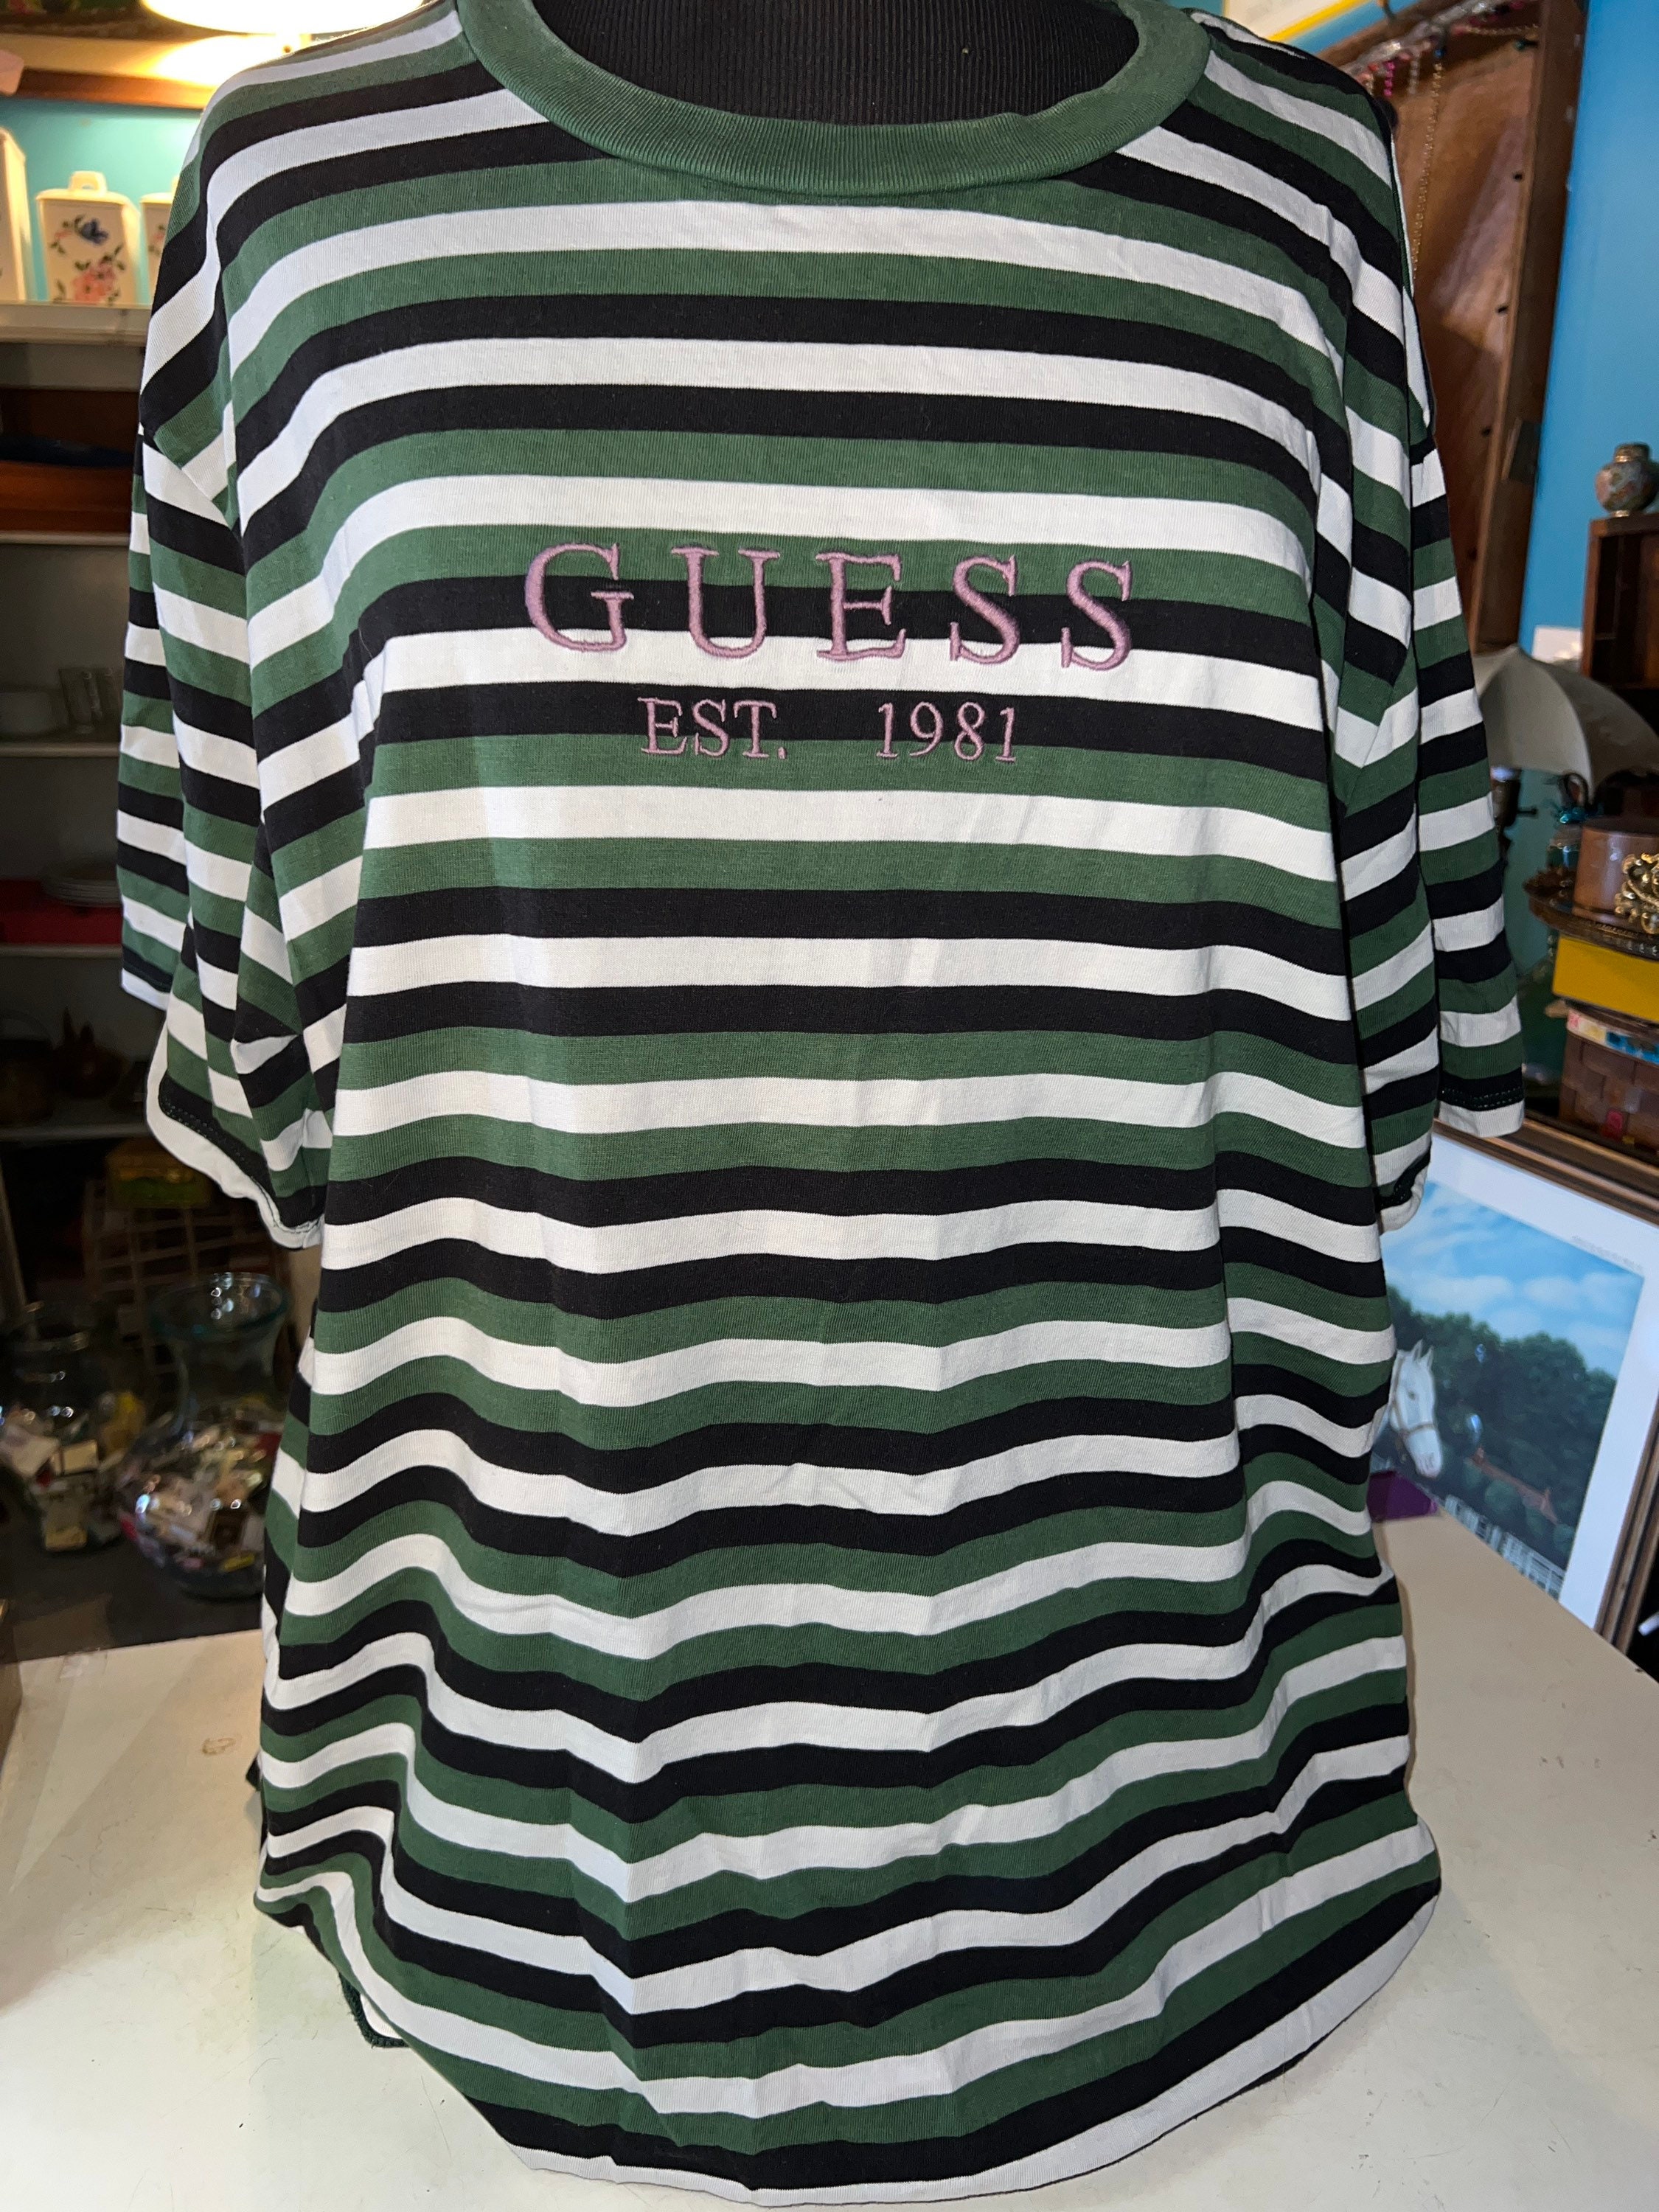 Vintage Guess T-shirt. Unisex Guess Jeans Shirt. Striped Guess T-shirt. The Guess Shirt! Size XL